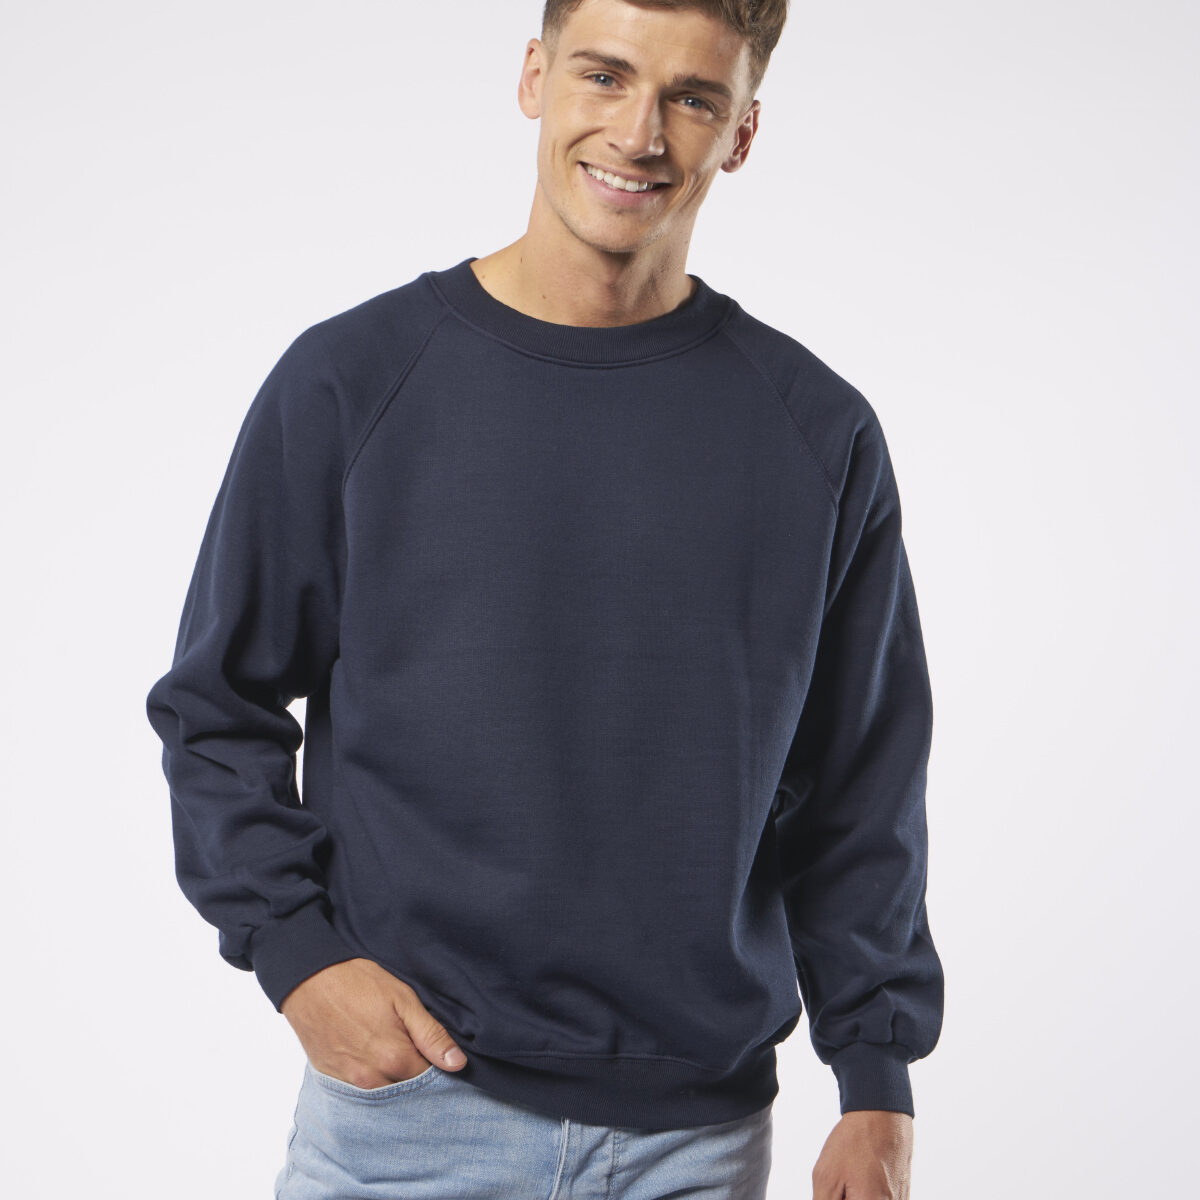 Coloursure sweatshirt